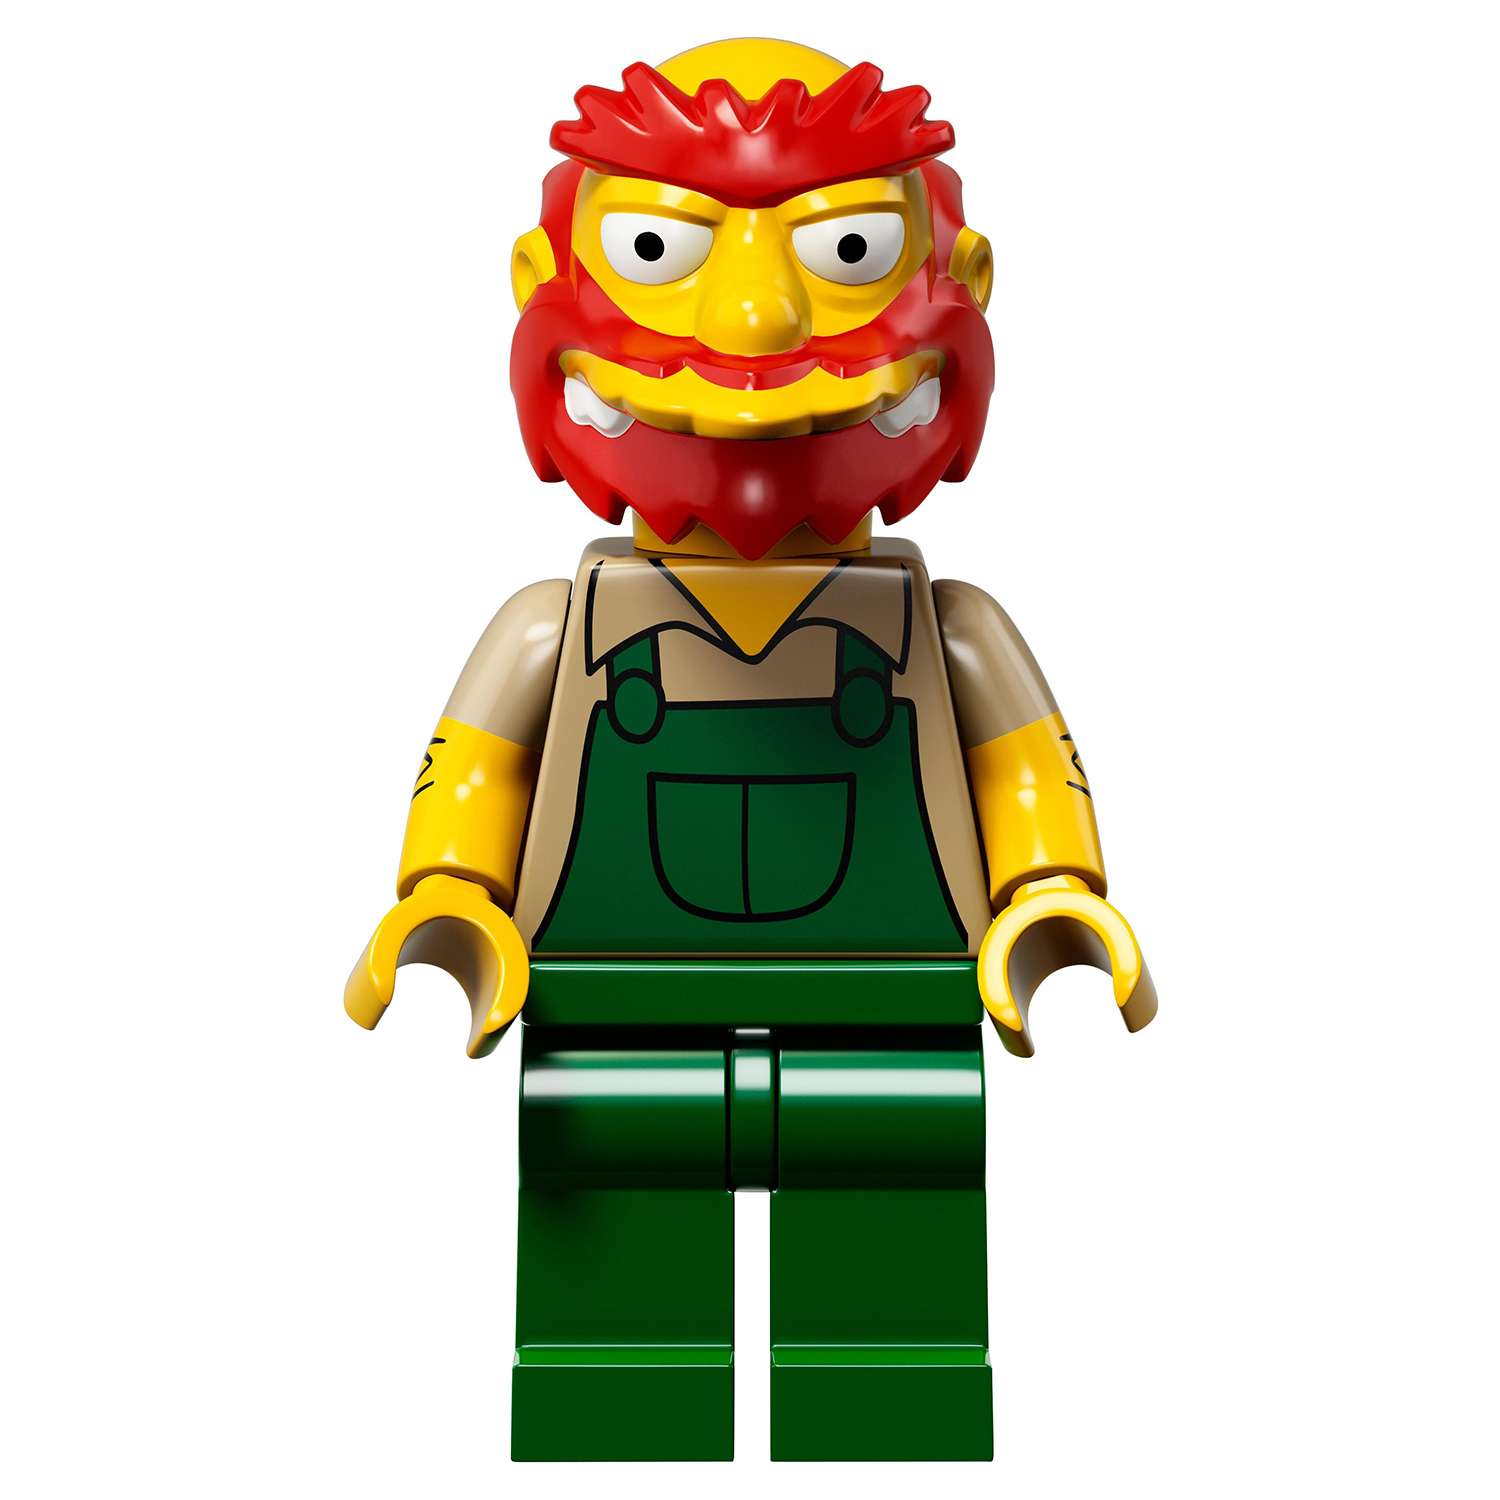 Конструктор LEGO Minifigures Минифигурки LEGO® Серия «Симпсоны» 2.0 (71009) - фото 21